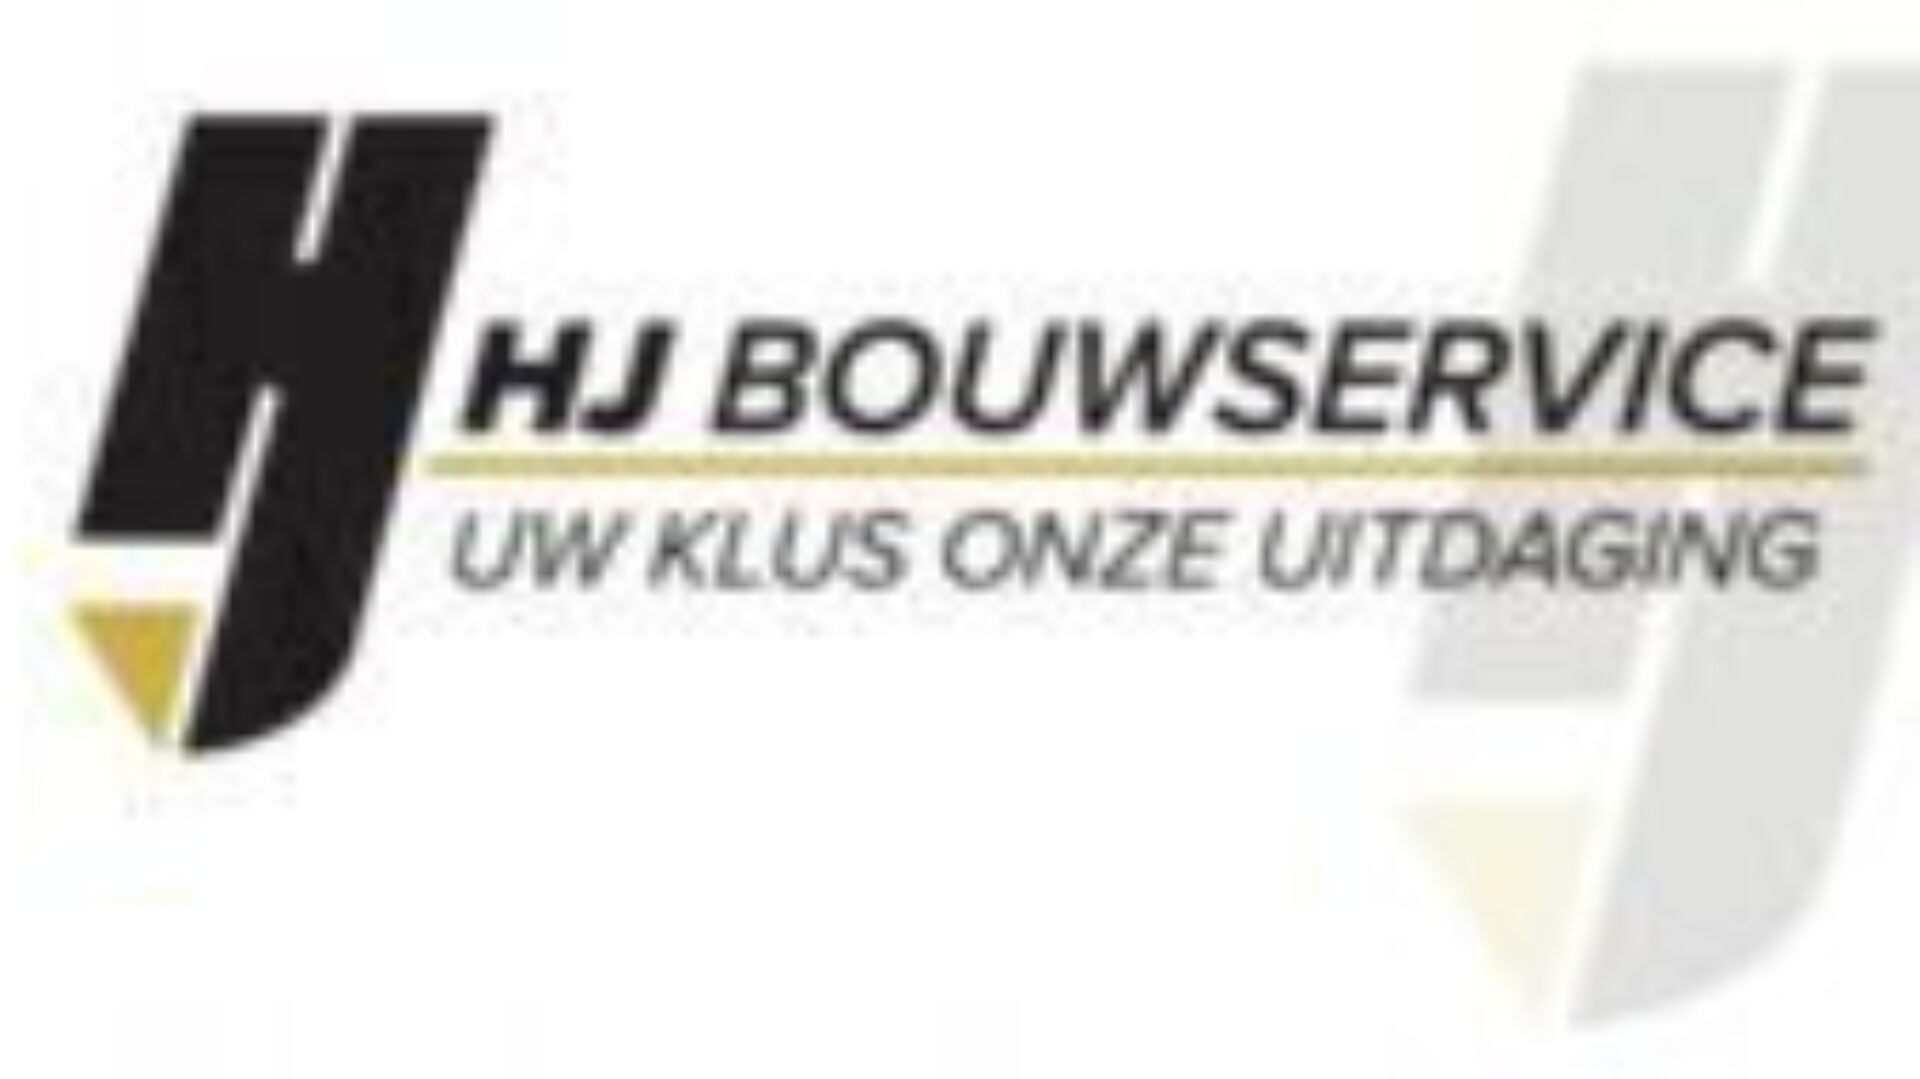 HJ Bouwservice